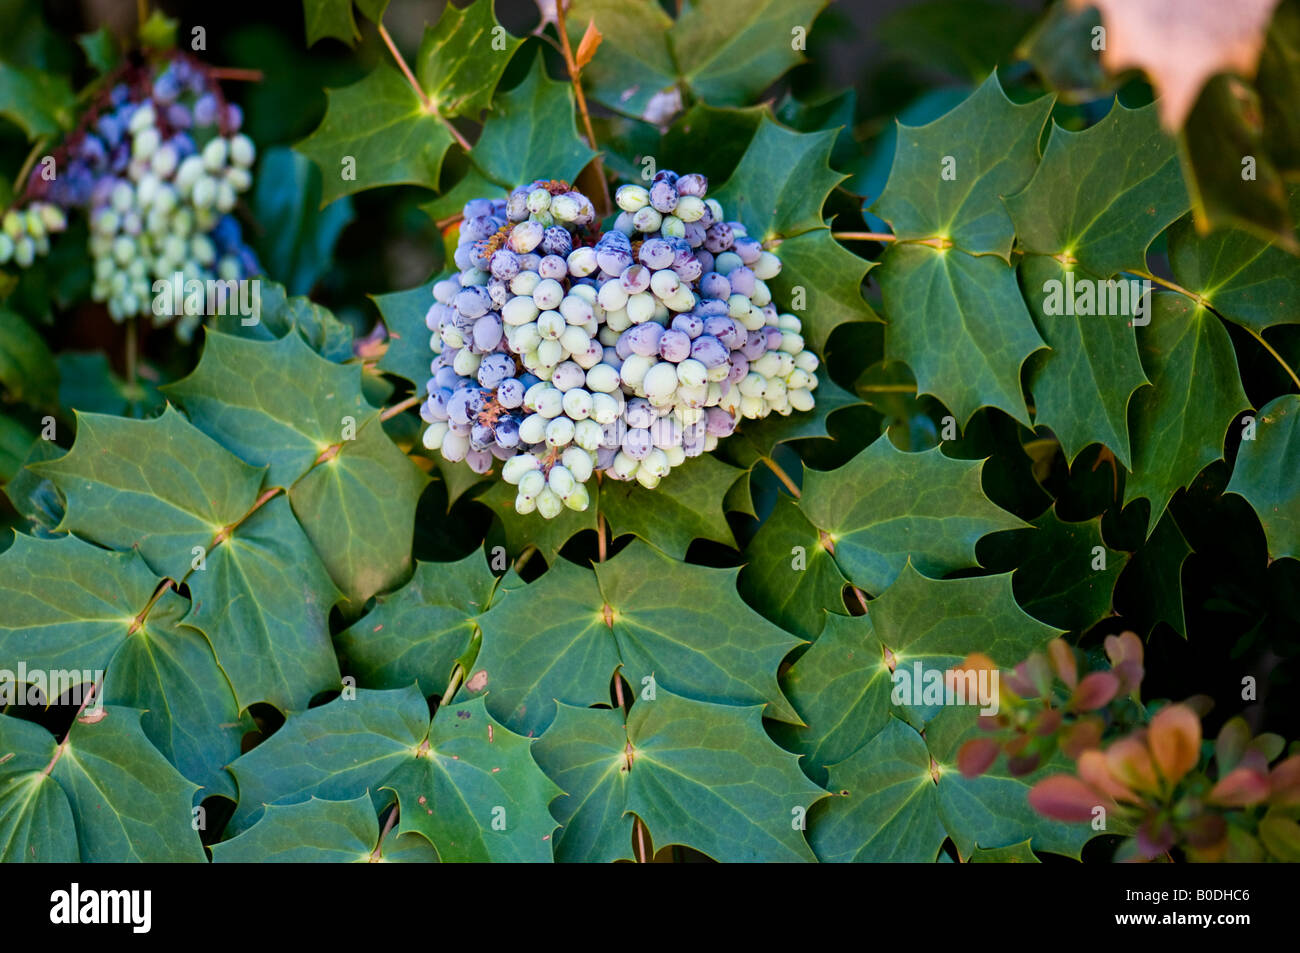 Una varietà di uva di Oregon arbusto, Mahonia aquifolium. Un arbusto ornamentali che fornisce la bellezza e le bacche che gli uccelli mangiano. Oklahoma, Stati Uniti d'America. Foto Stock